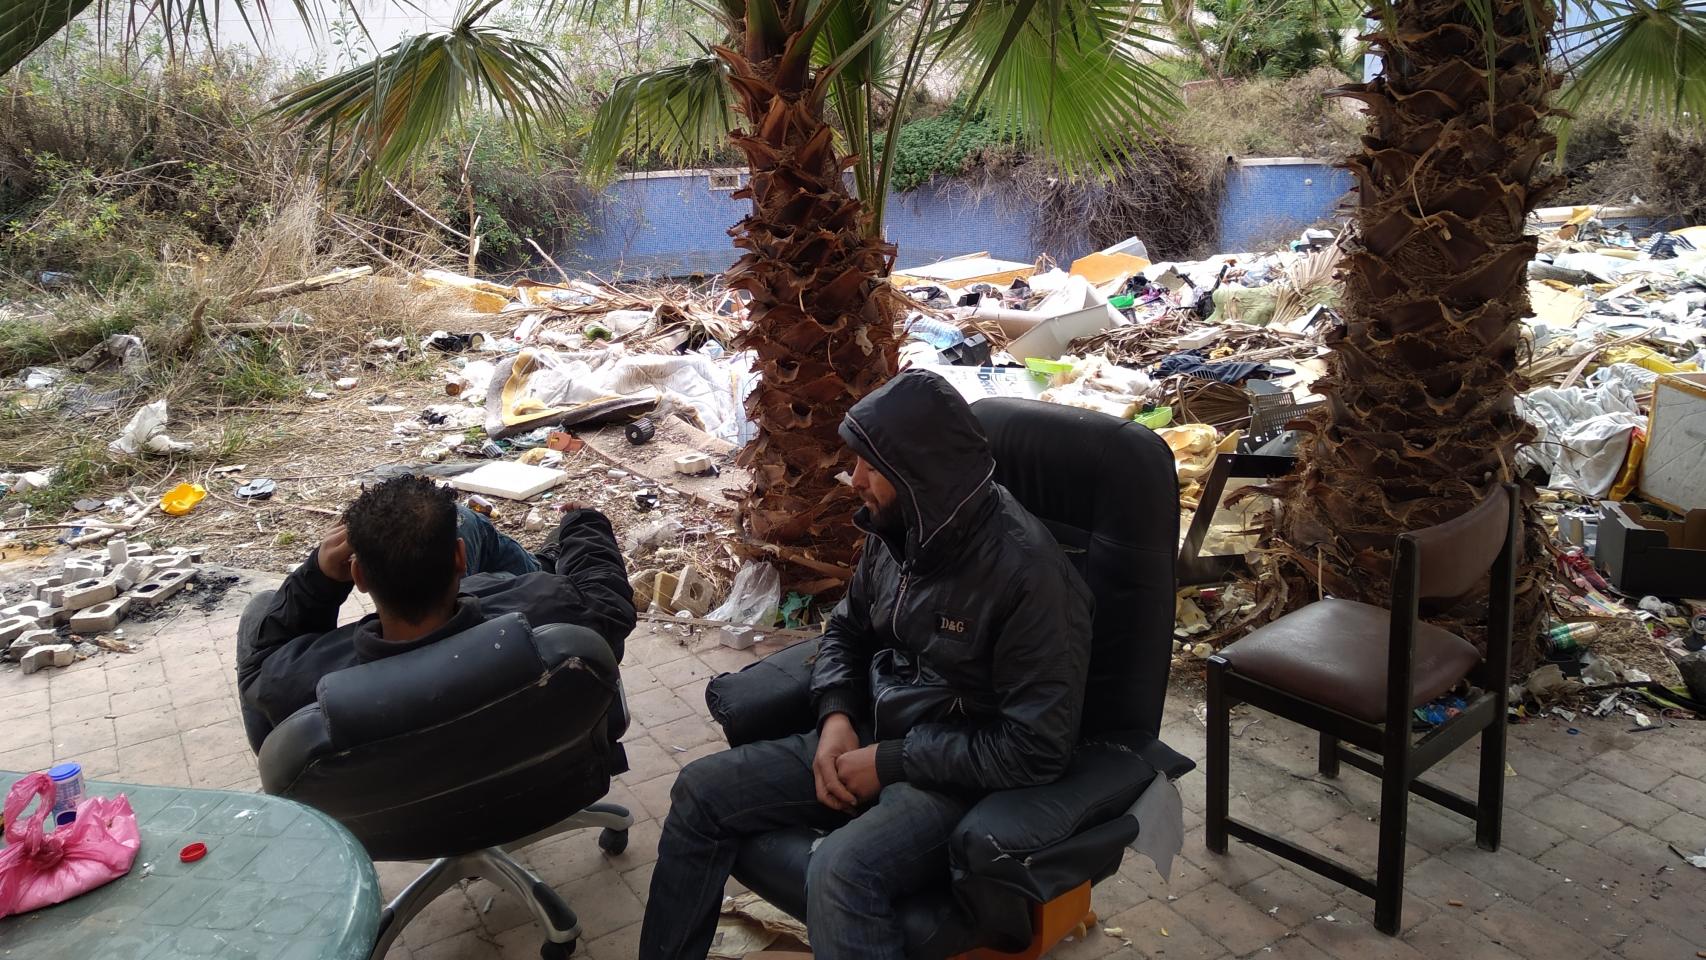 Abdelkader y Sliman, sentados en unas sillas que han cogido de la basura.